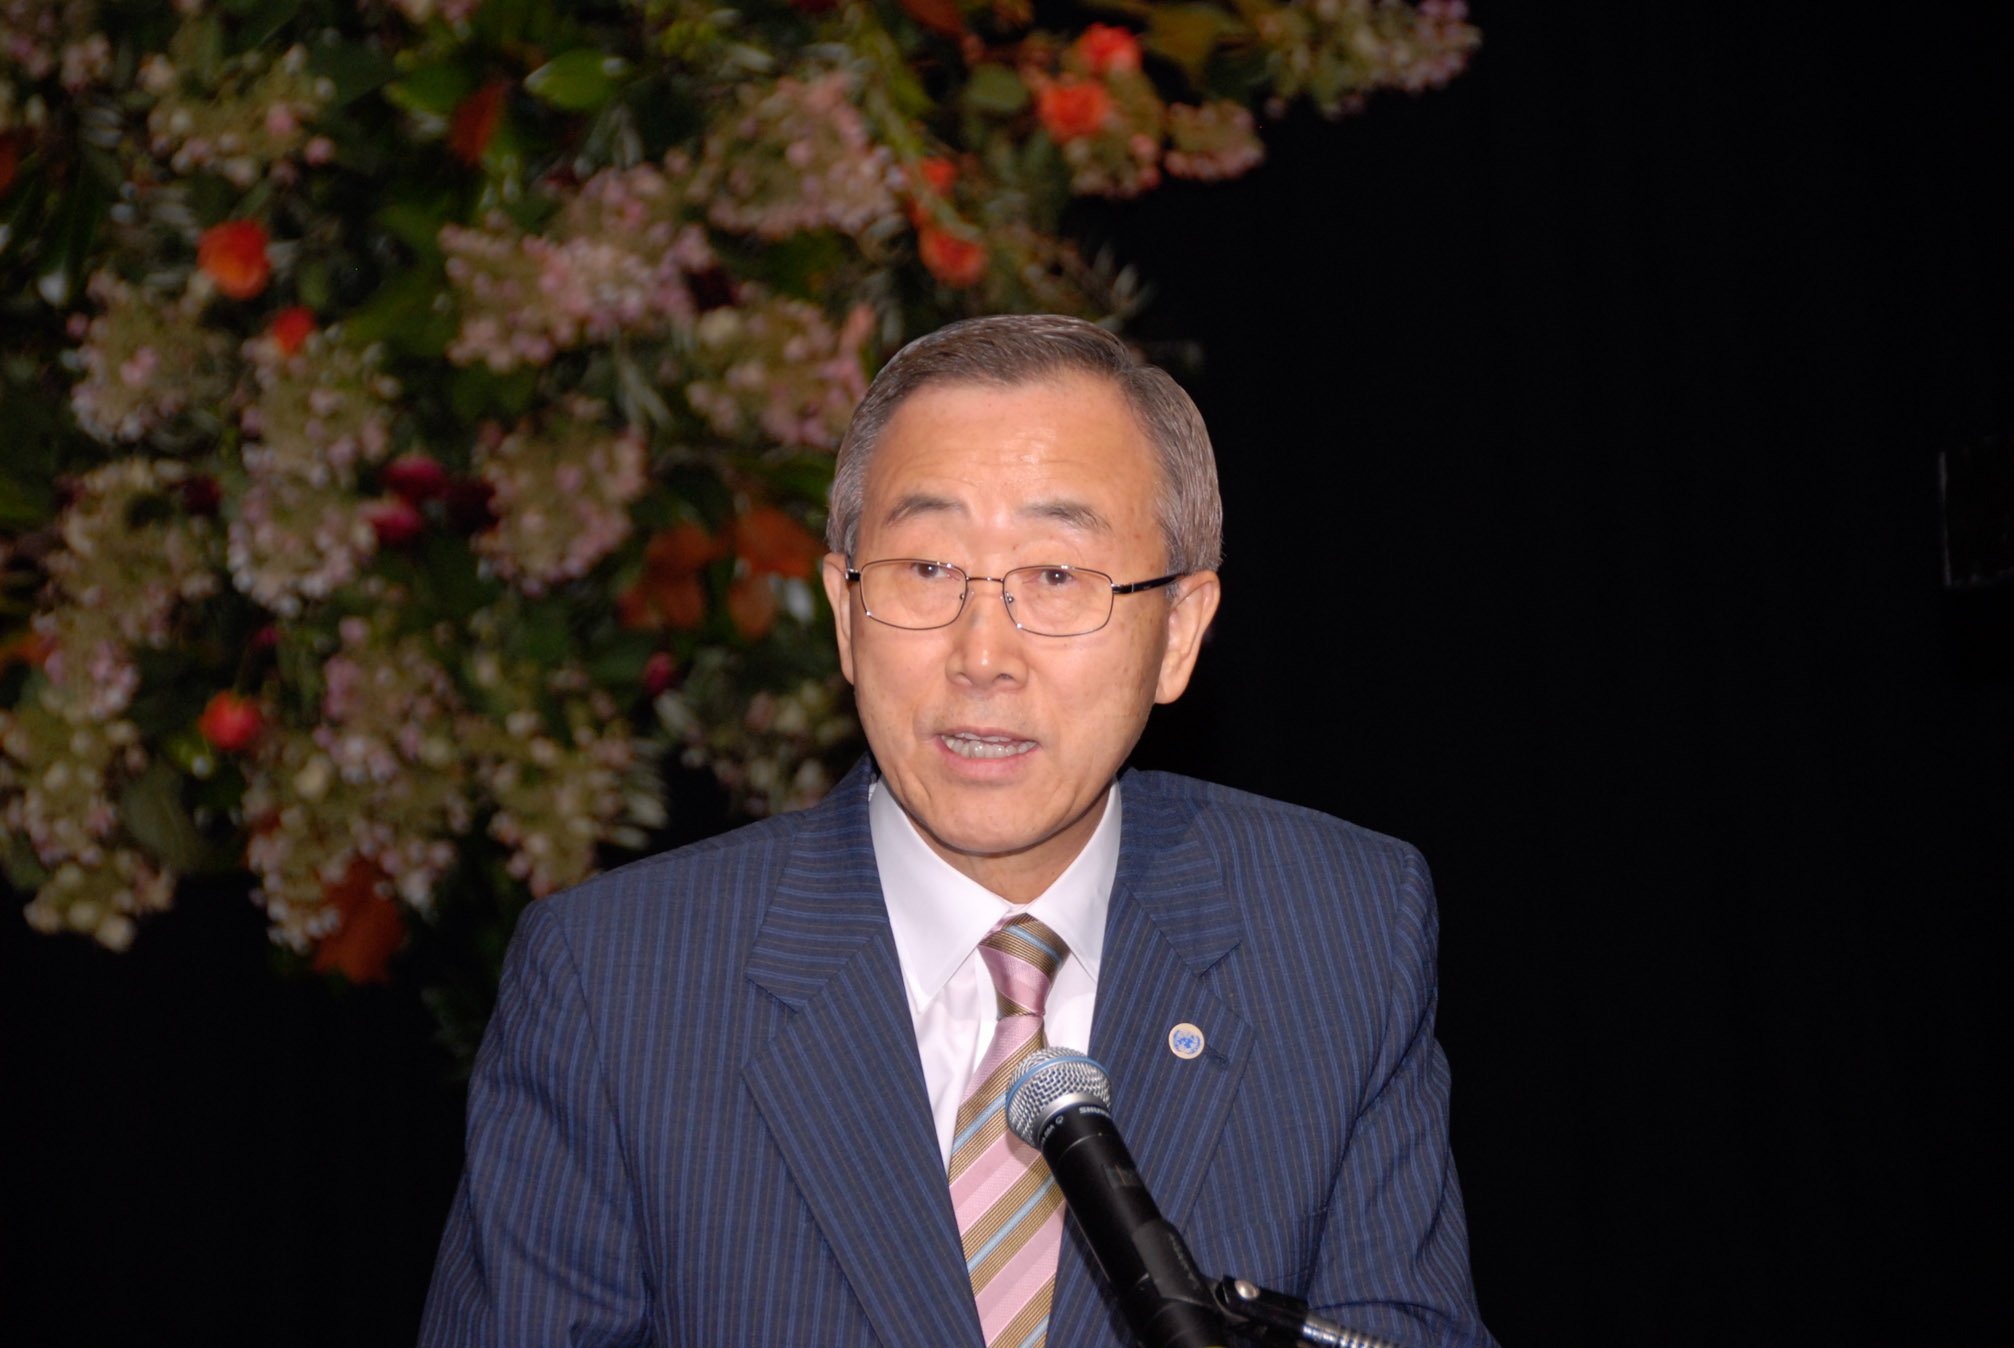 Ban Ki Moon